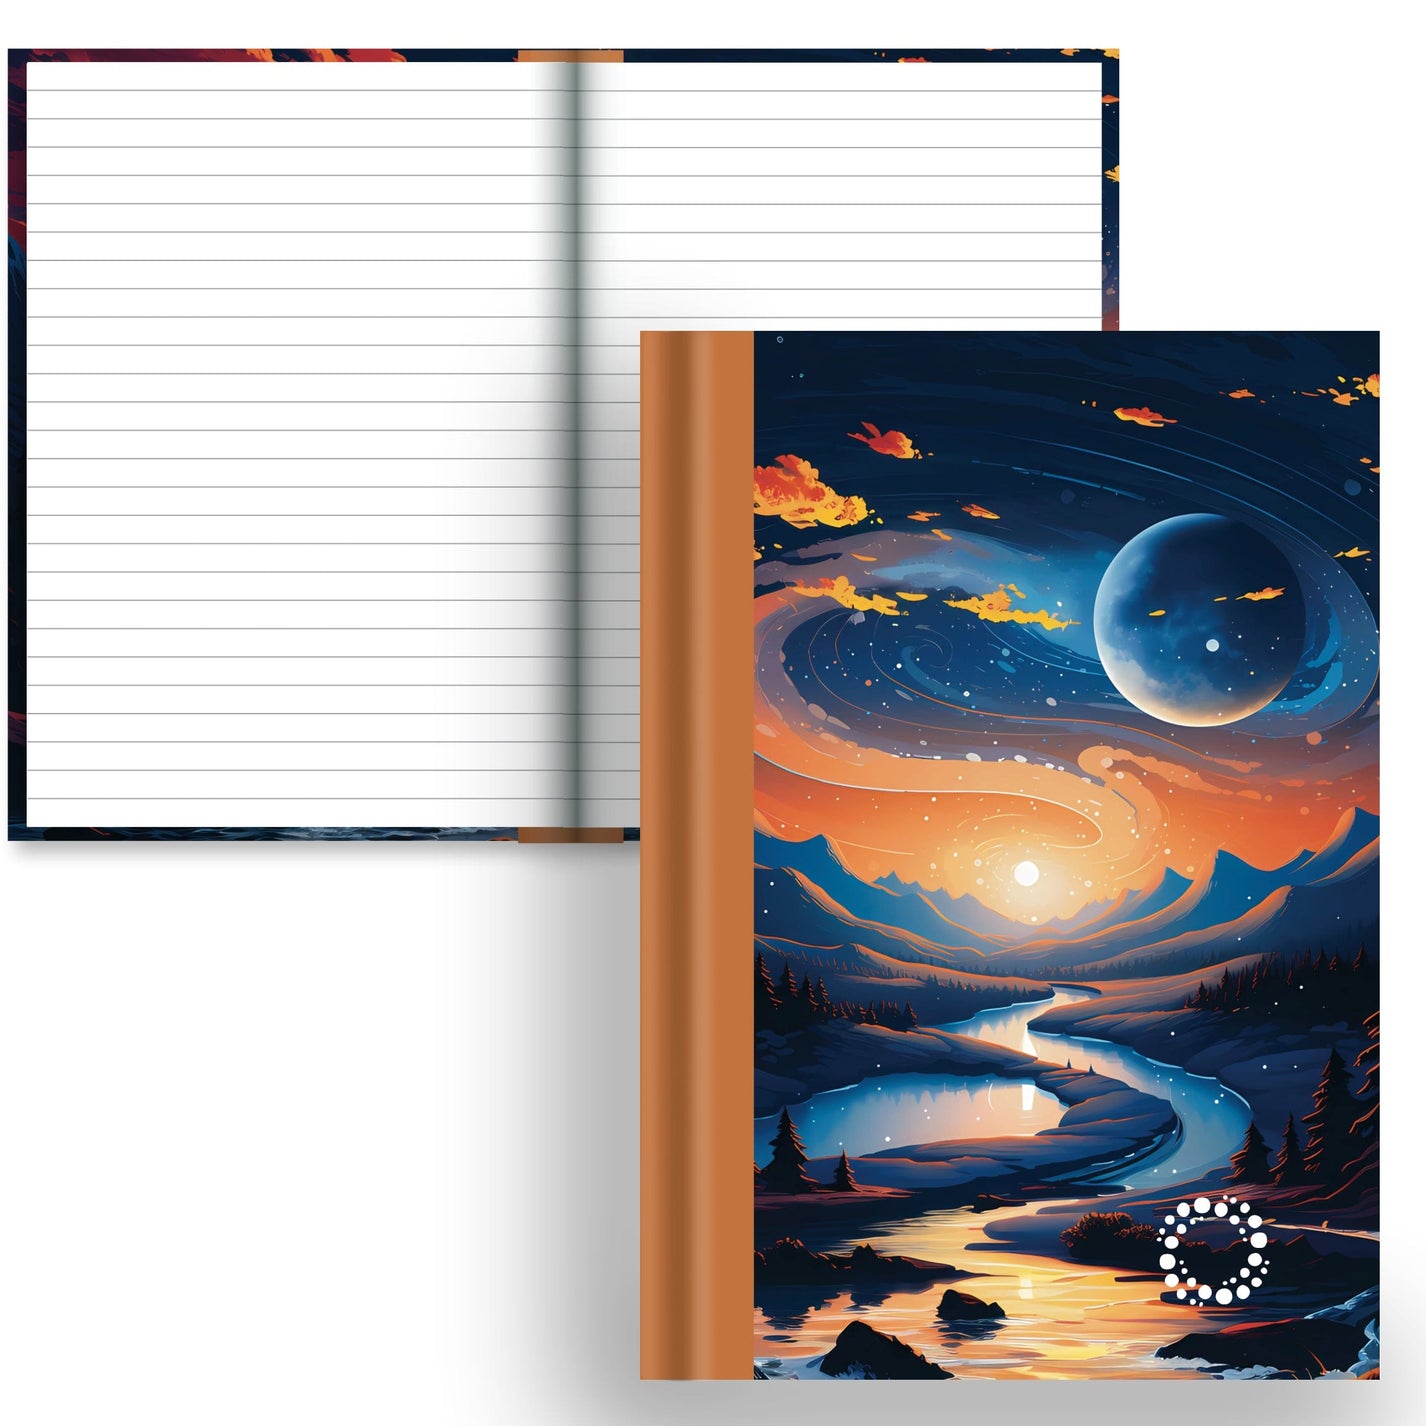 DayDot Journals Lined Paper Wilderness - A5 Hardback Notebook